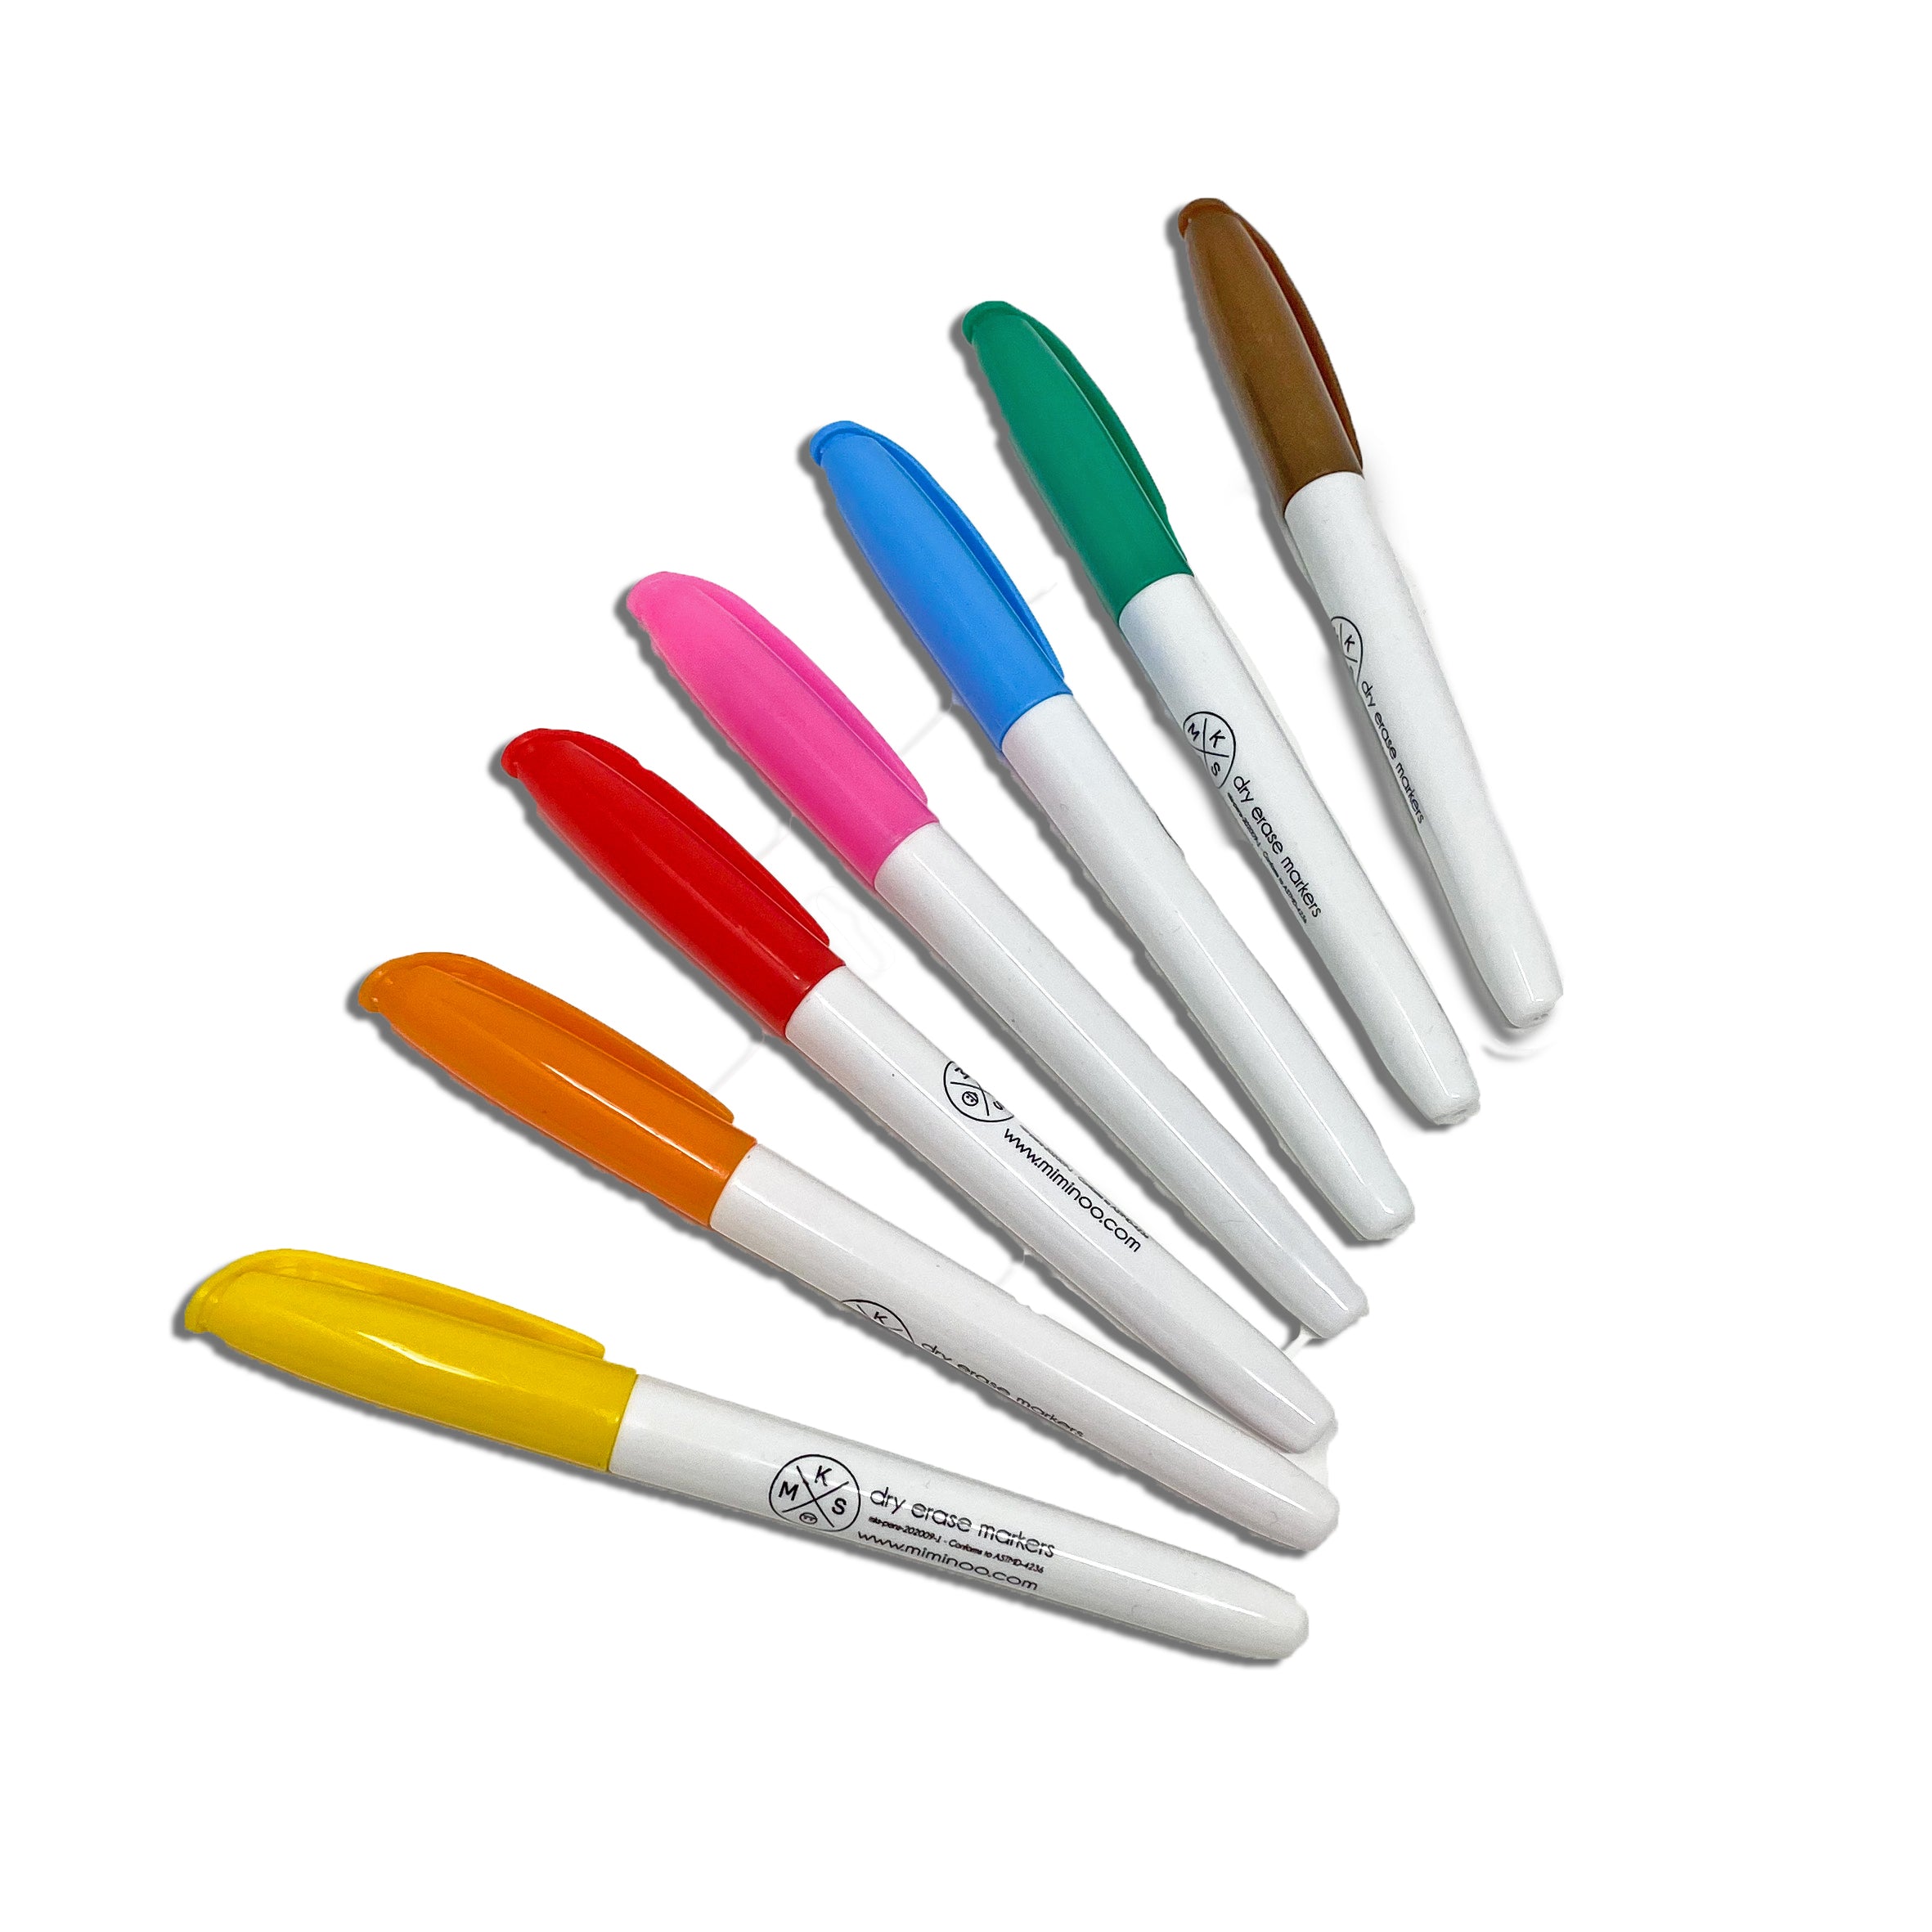 https://miminoo.com/cdn/shop/products/dry-erase-non-toxic-markers-markers-mks-miminoo-352602.jpg?v=1642626295